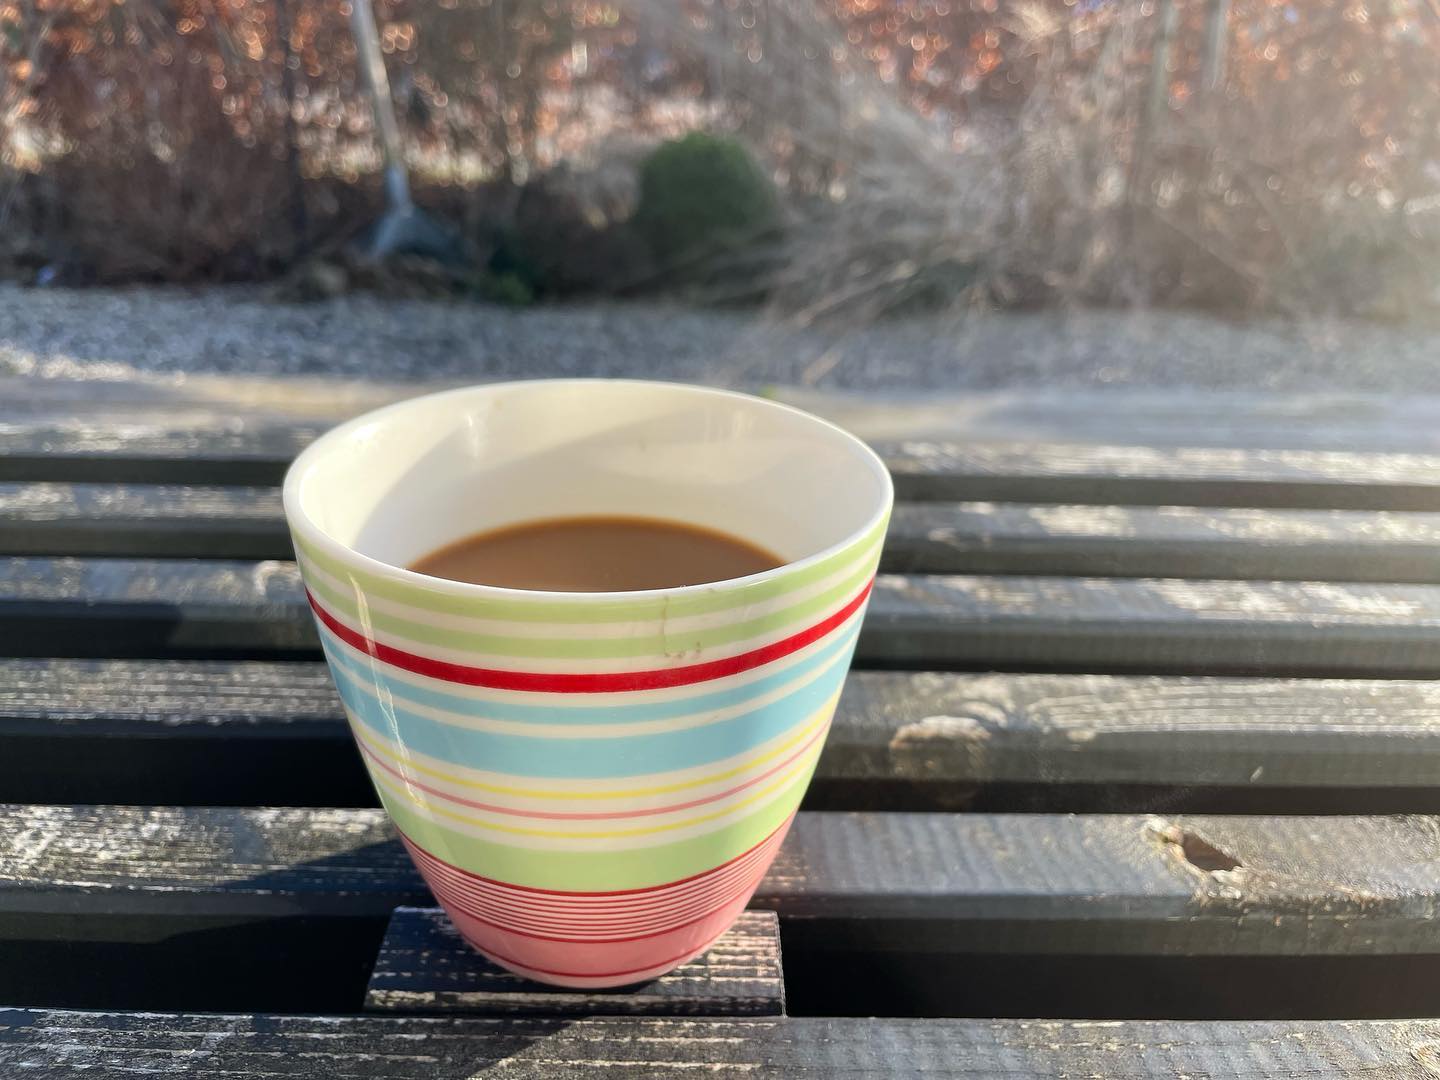 AHHH • årets første kop kaffe i sol på terrassen. Jeg bliver så glad ved tanken om at der bliver flere og flere af de stunder i de kommende måneder. 
•
#countrylivsliv #kaffeisolen #solpåterrassen #kaffepåterrassen #solijanuar #kaffepause